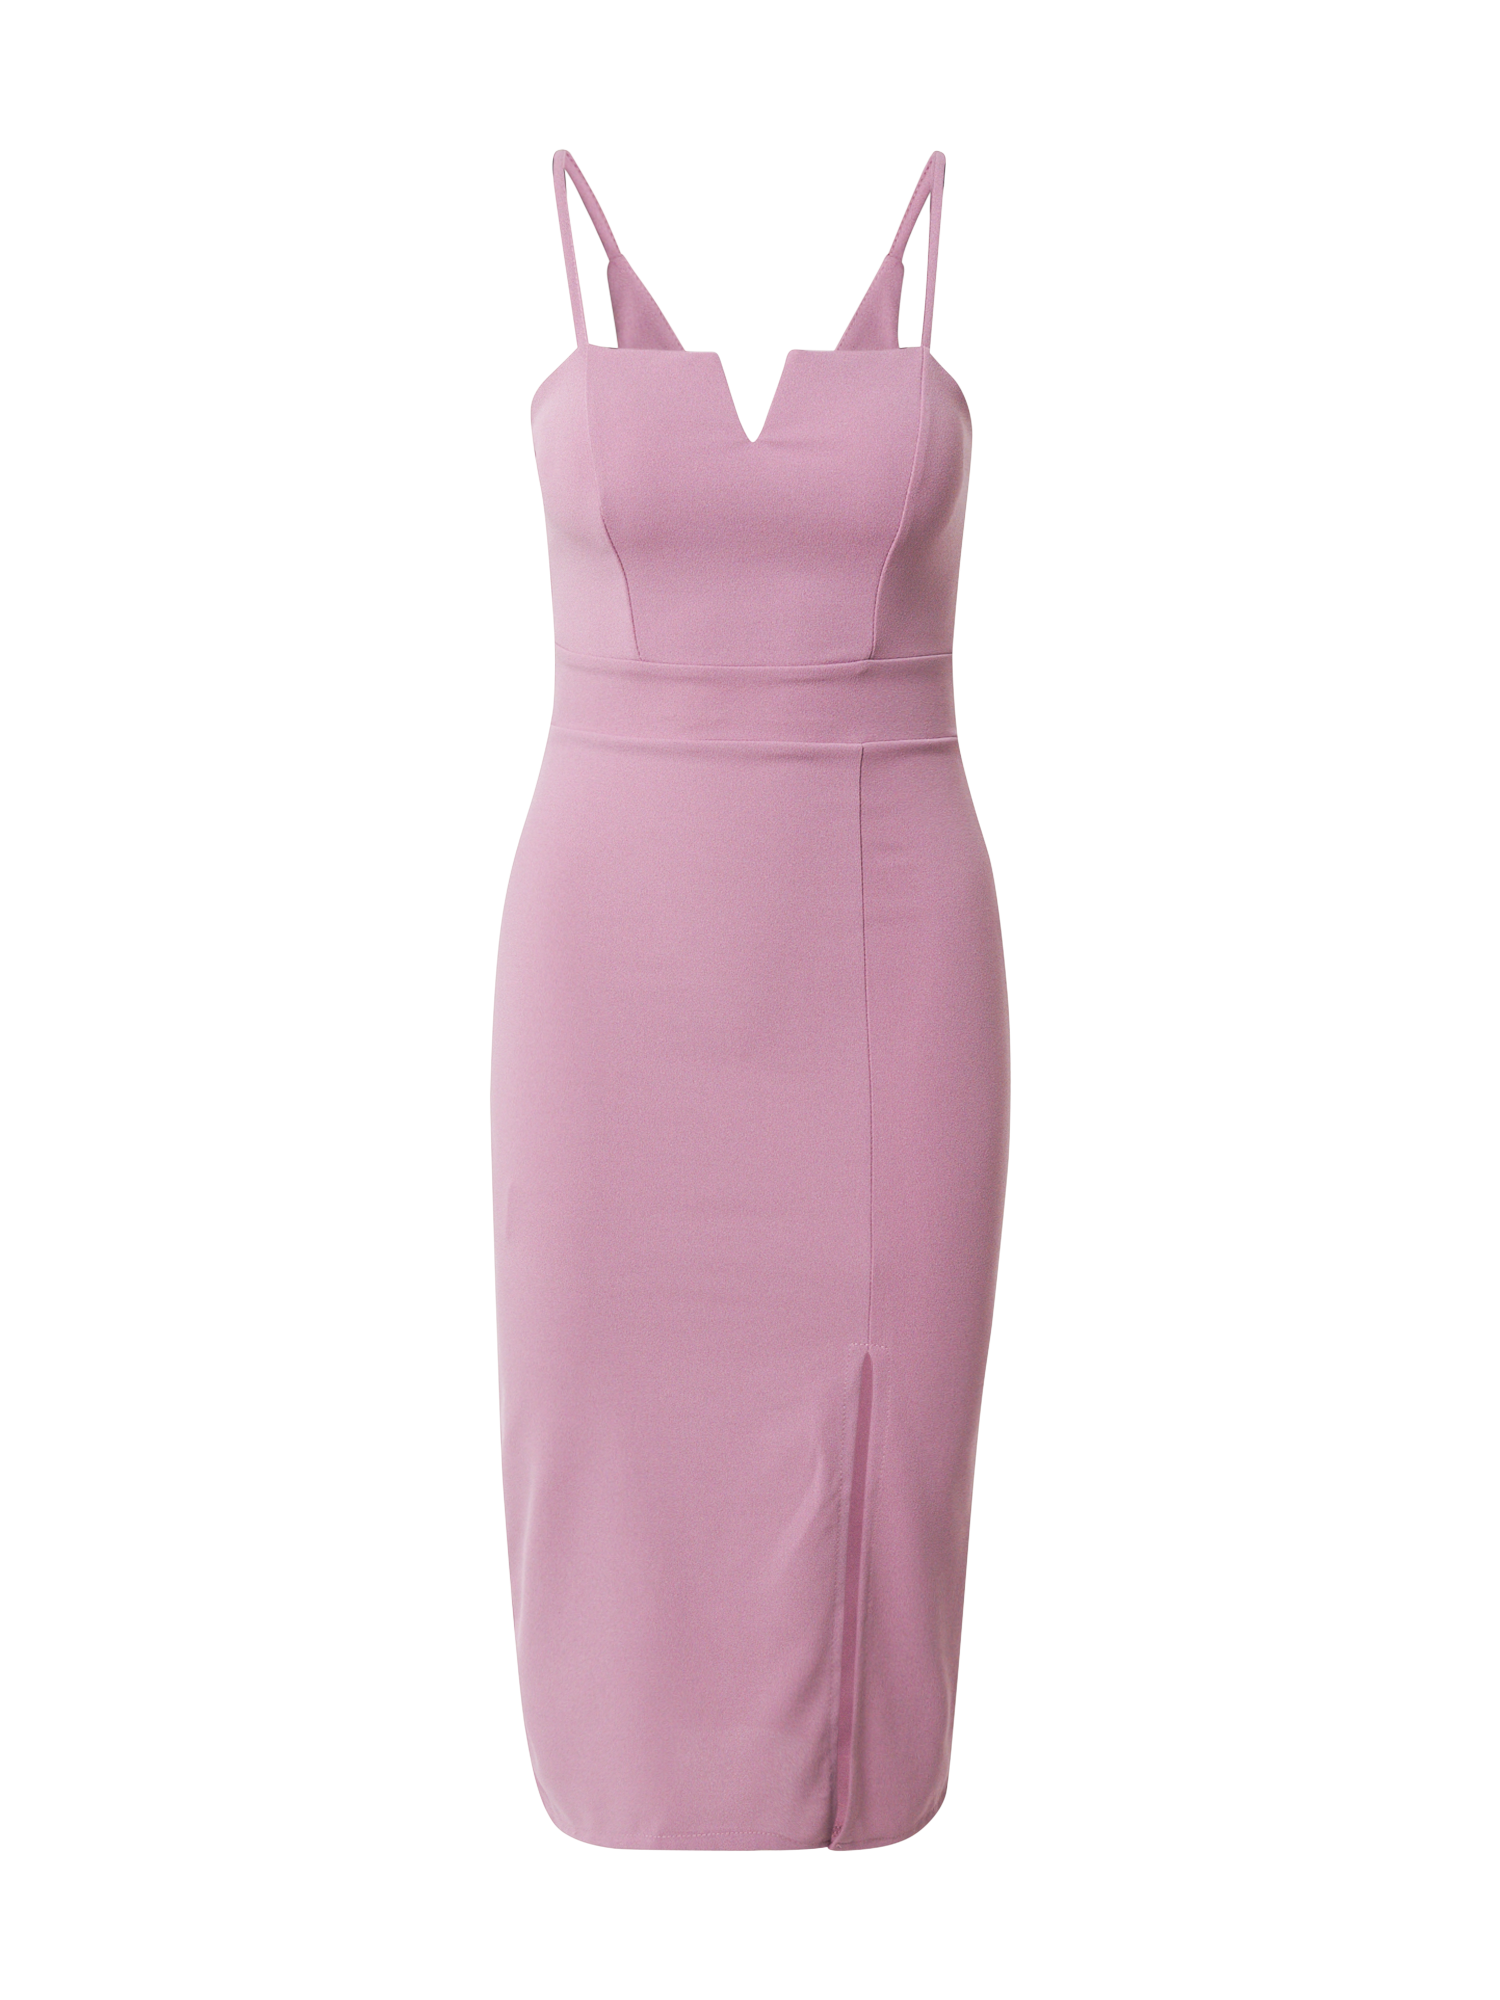 Odzież rktel WAL G. Sukienka koktajlowa ELIZA w kolorze Różowym 